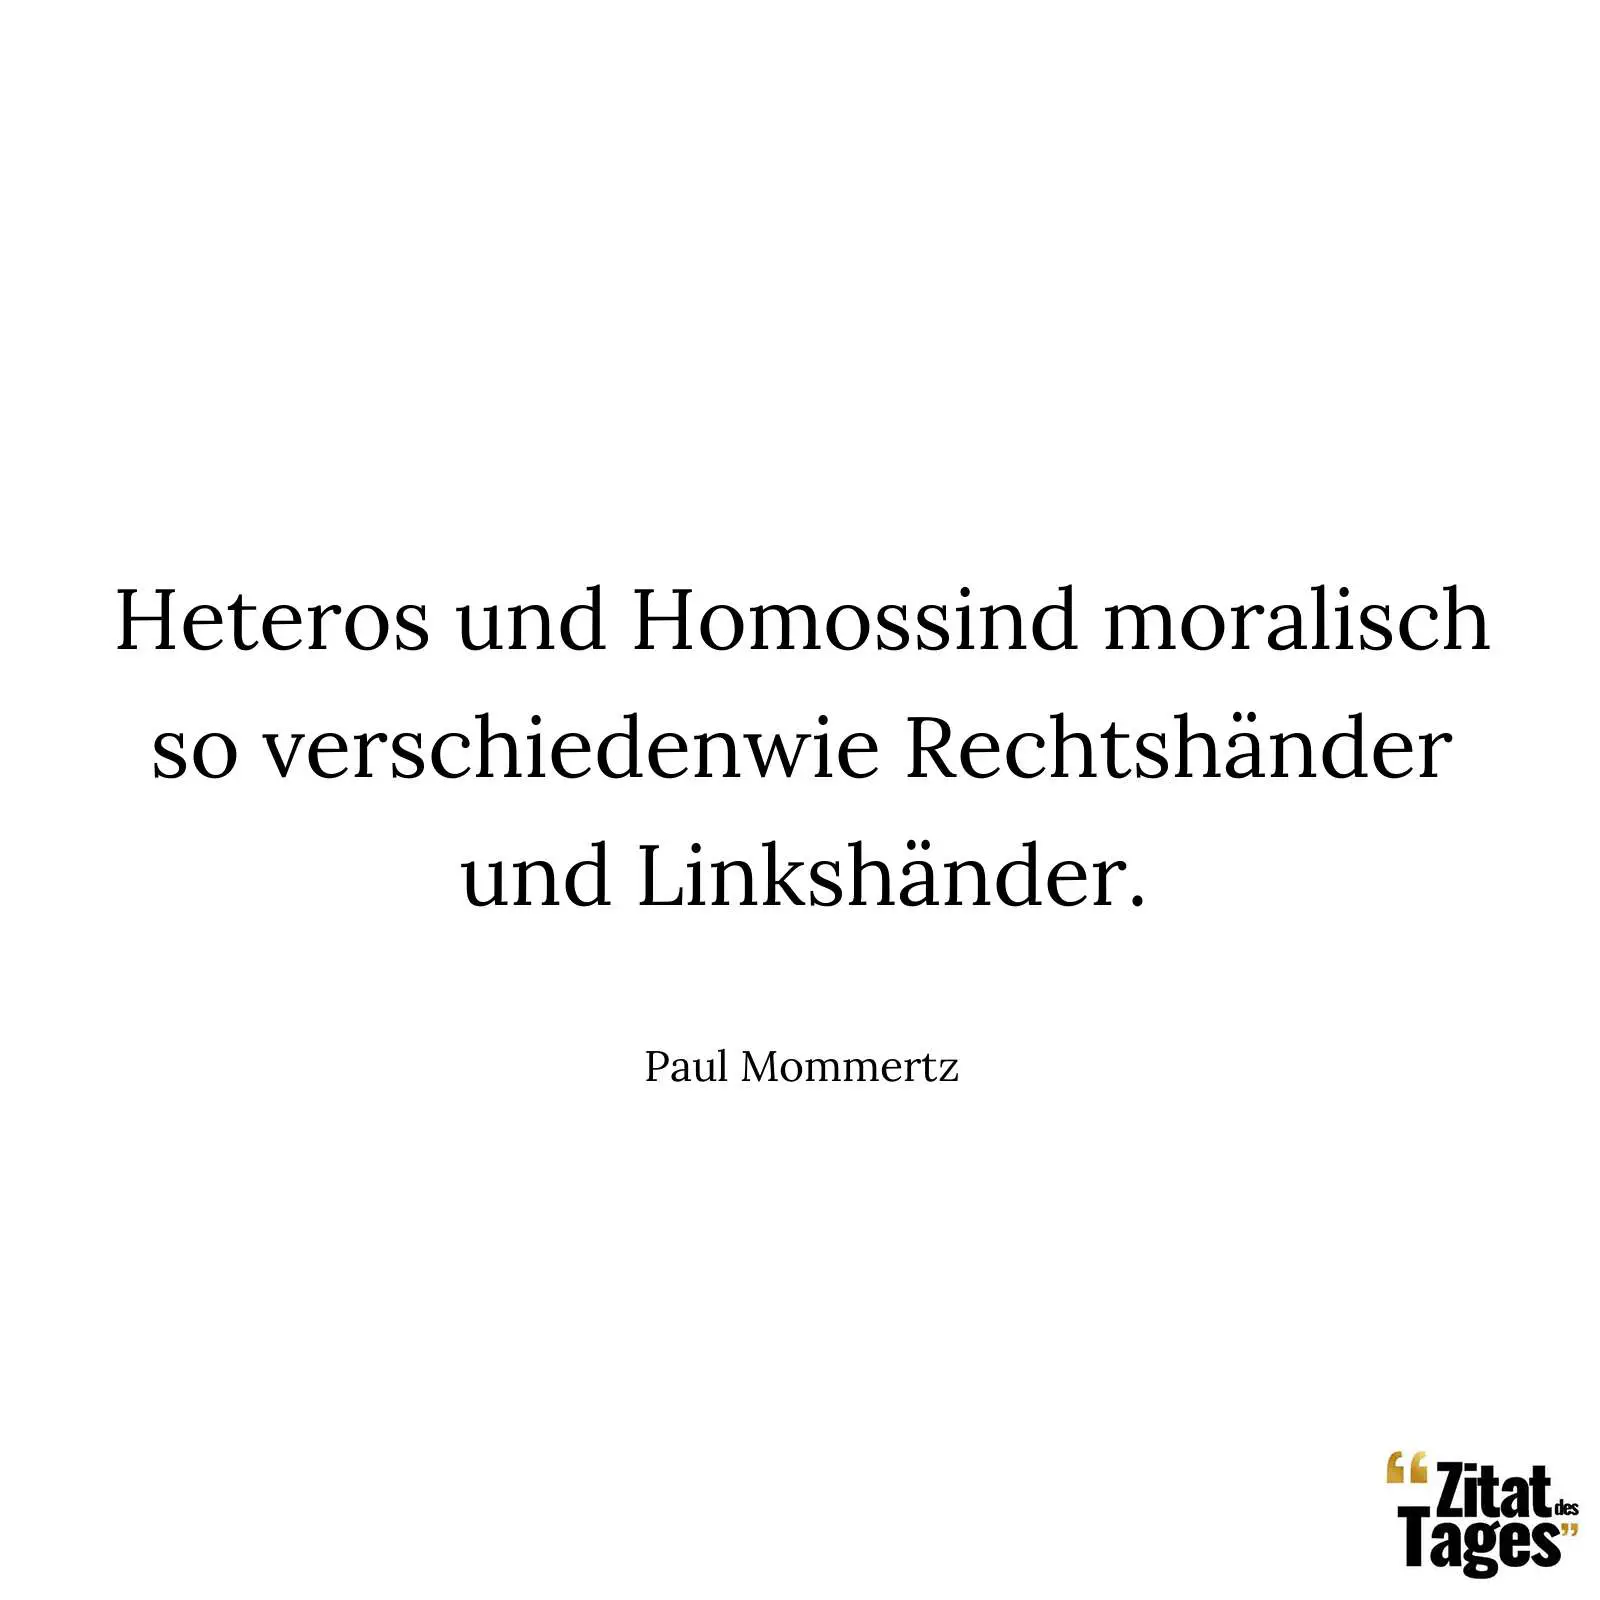 Heteros und Homossind moralisch so verschiedenwie Rechtshänder und Linkshänder. - Paul Mommertz